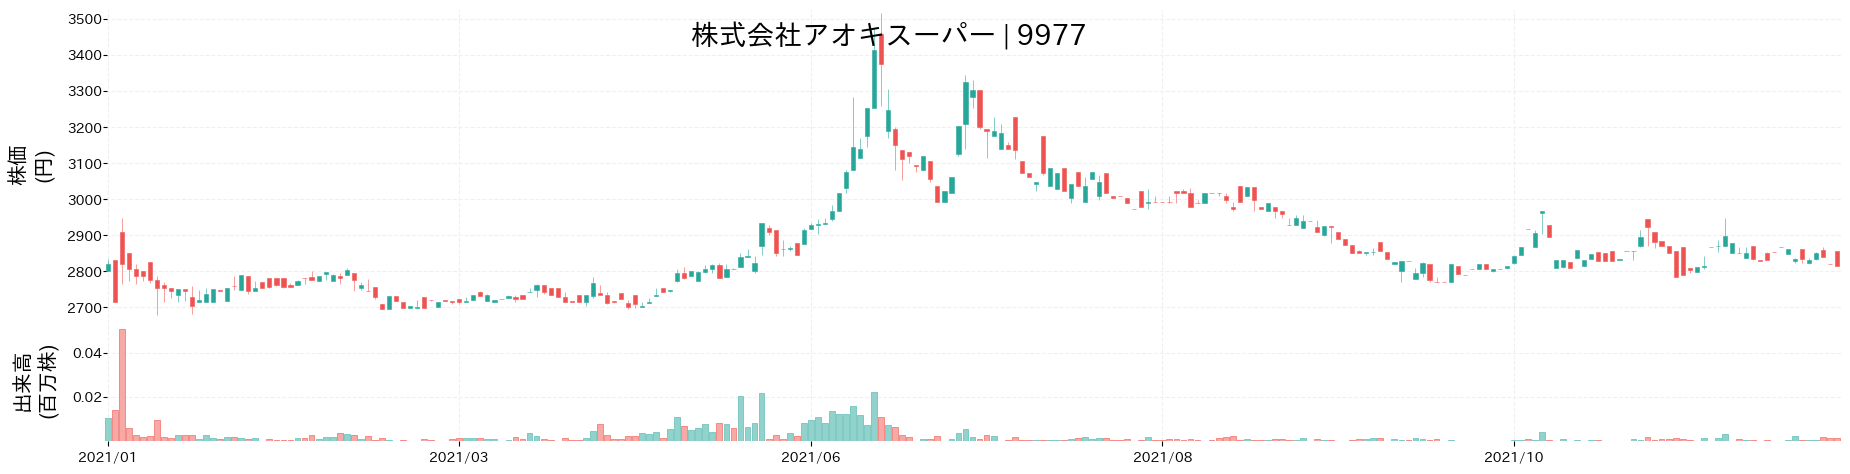 アオキスーパーの株価推移(2021)